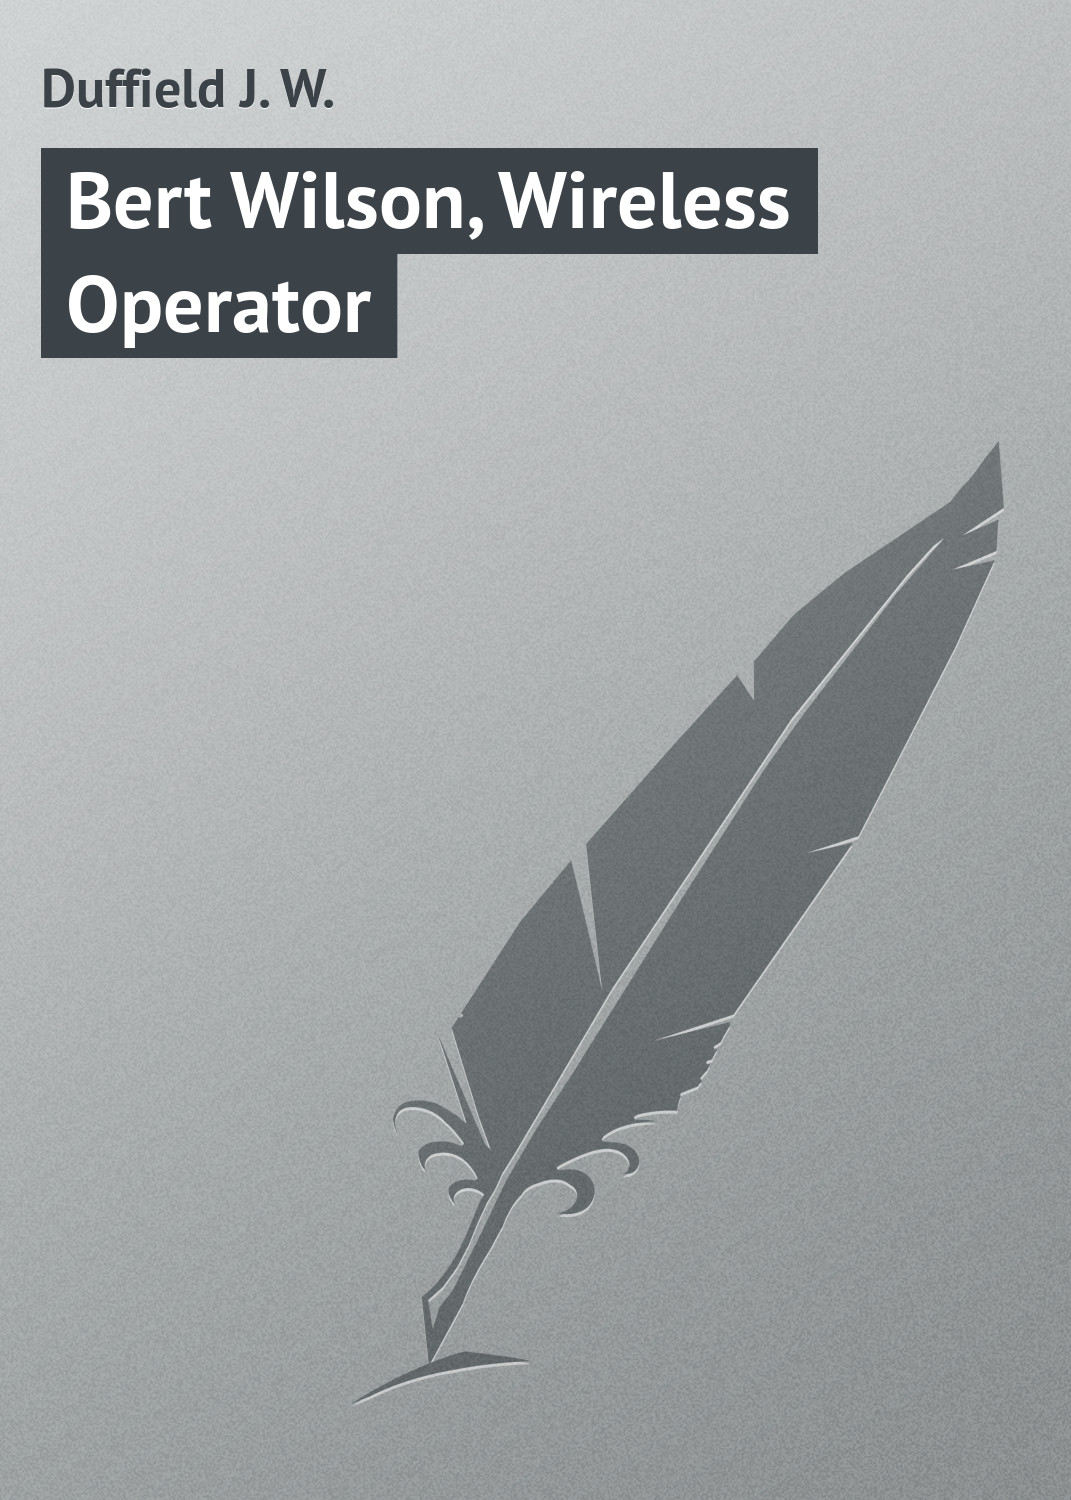 Книга Bert Wilson, Wireless Operator из серии , созданная J. Duffield, может относится к жанру Зарубежная классика, Зарубежные детские книги. Стоимость электронной книги Bert Wilson, Wireless Operator с идентификатором 23154659 составляет 5.99 руб.